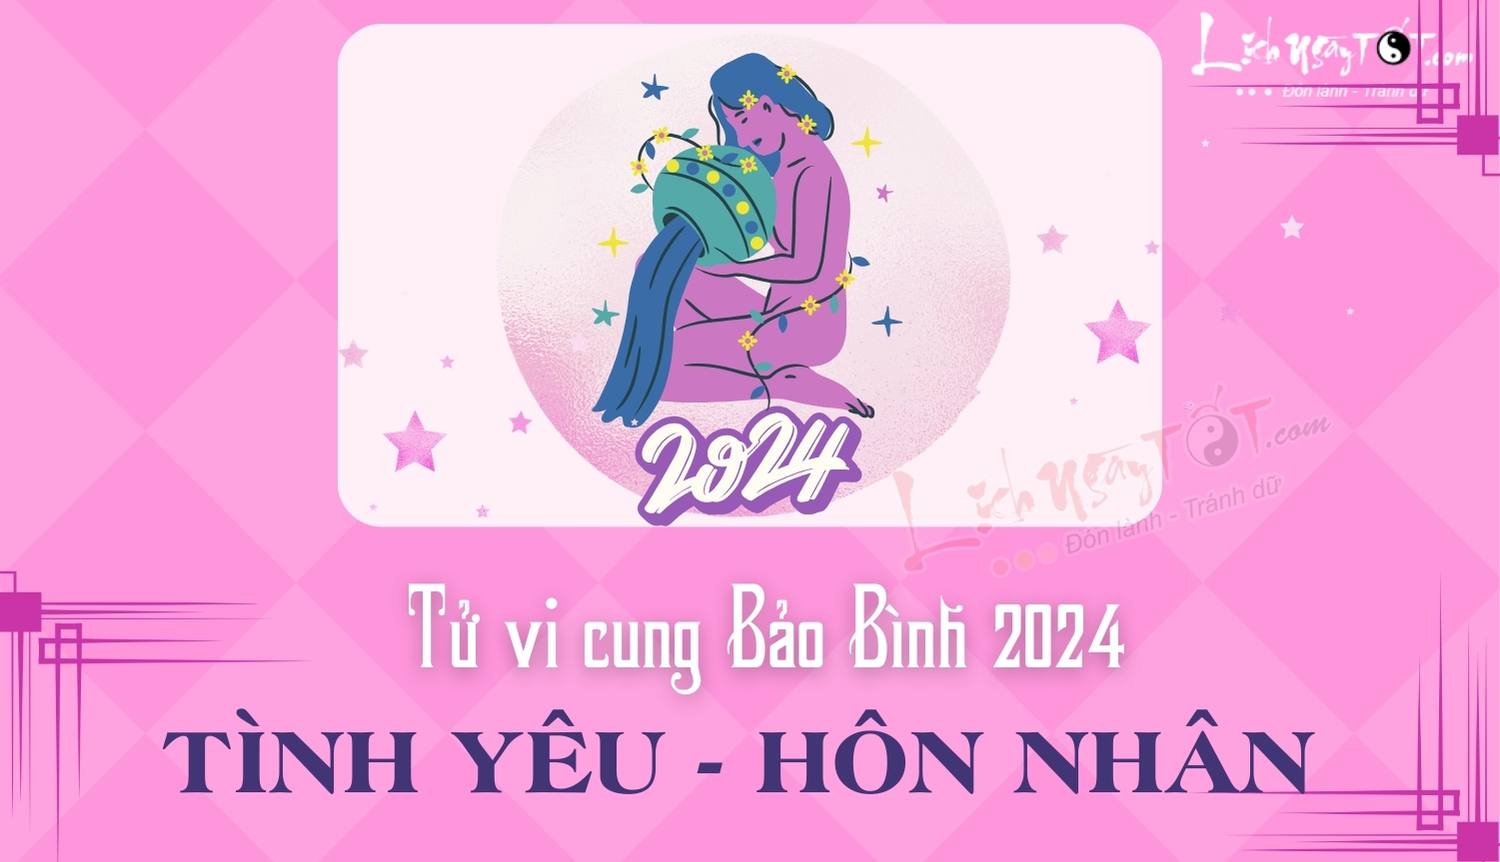 Tu vi tinh cam cung Bao Binh nam 2024